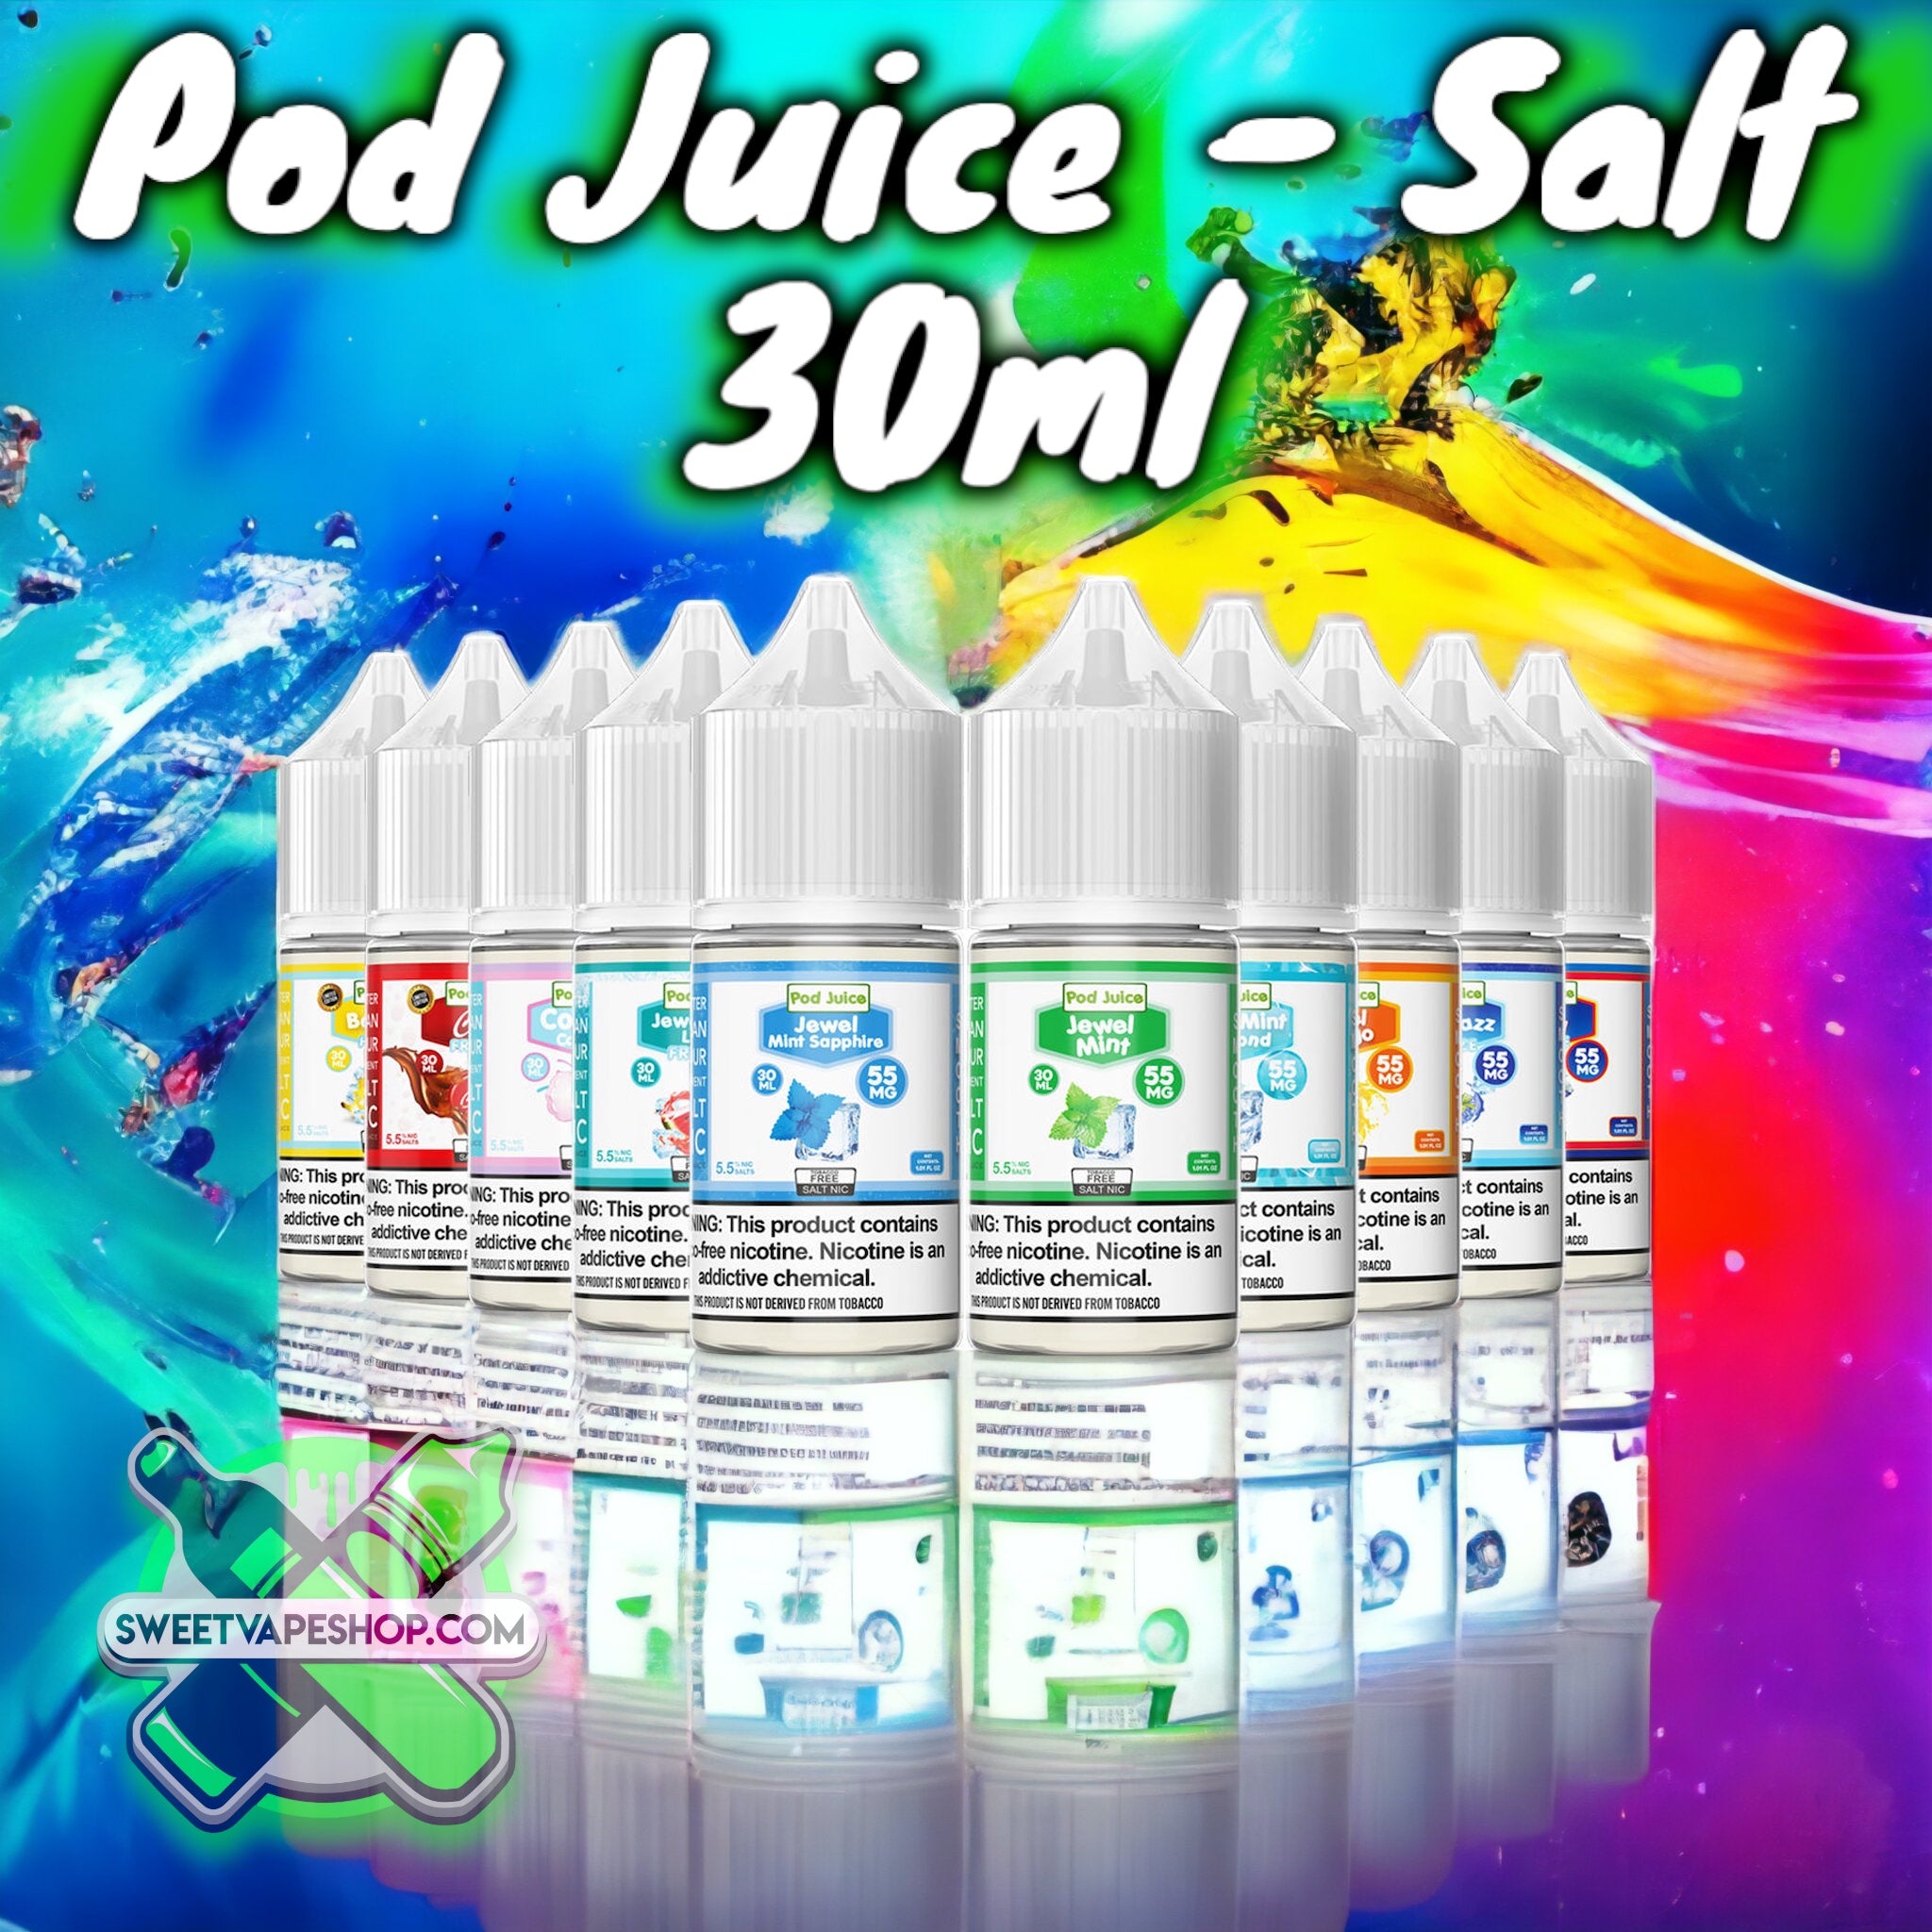 Pod Juice - Salt Nicotine 30ml